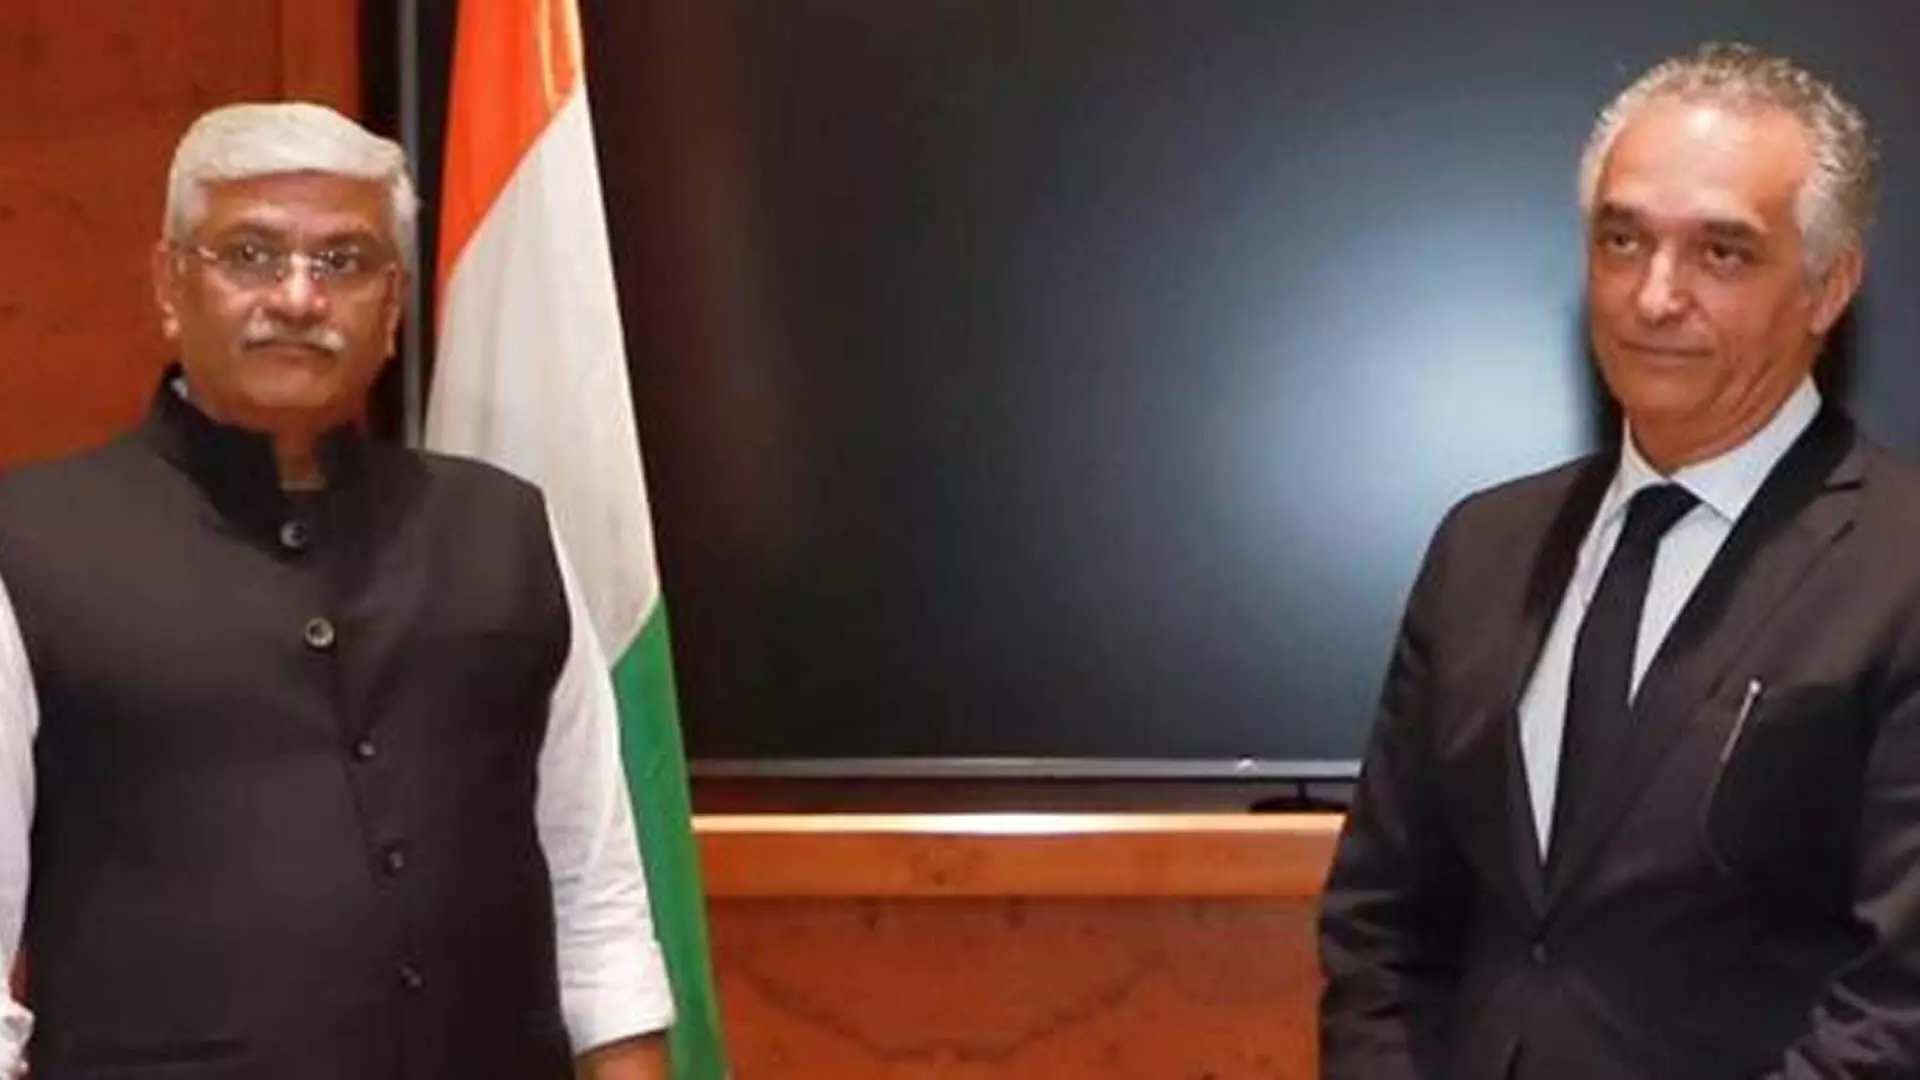 Dehli: जॉर्डन के पर्यटन मंत्री ने भारत के साथ बेहतर कनेक्टिविटी और पुरातात्विक सहयोग का आग्रह किया